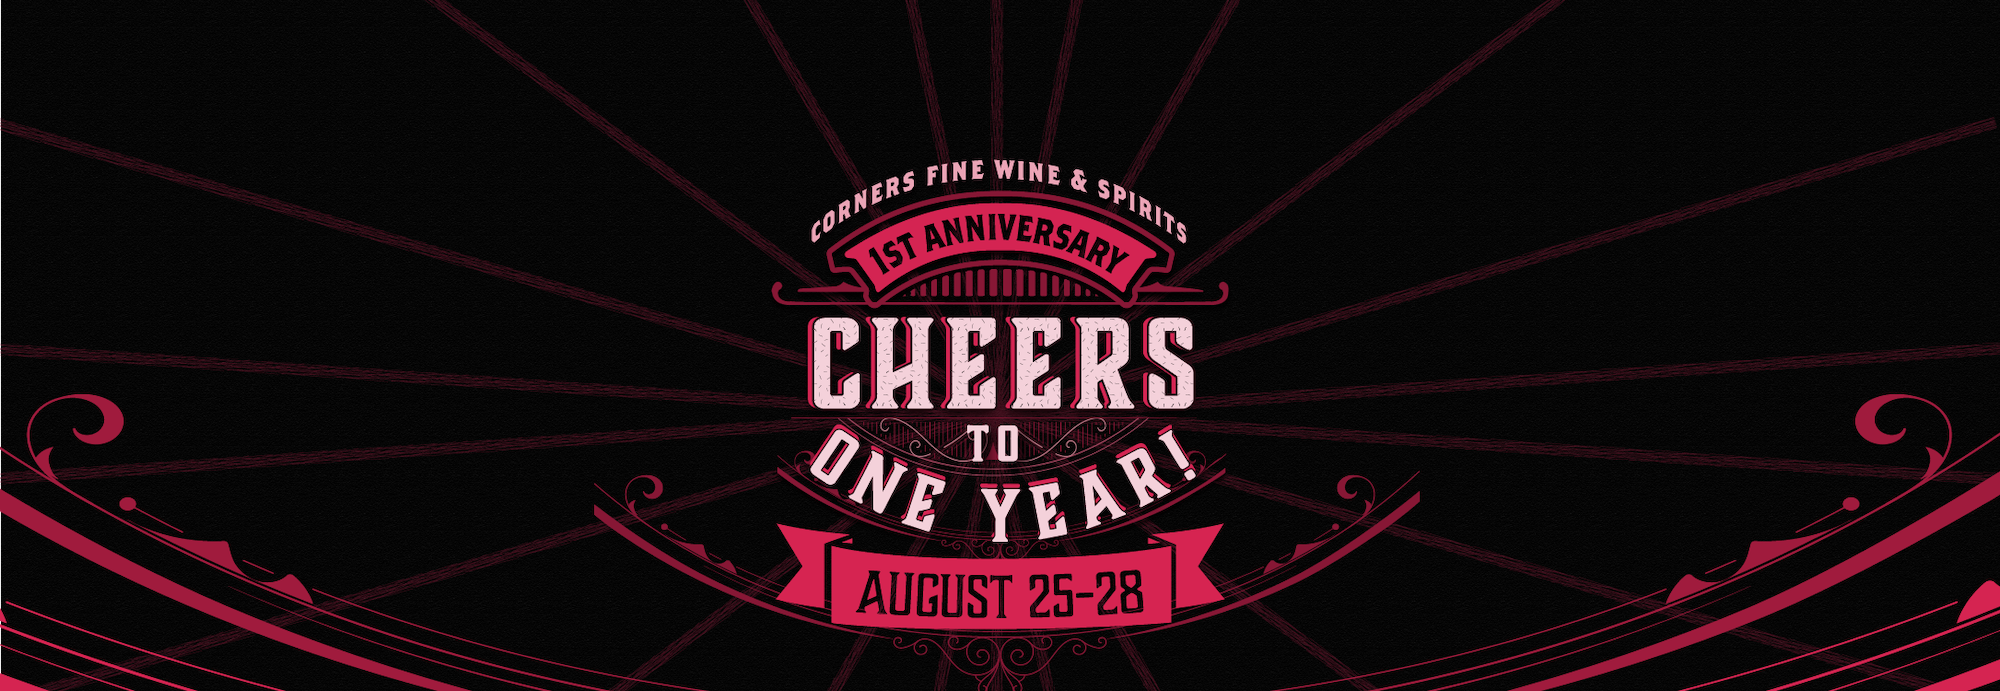 Corners Fine Wine & Spirits Cheers to One Year Anniversary Logo 2021